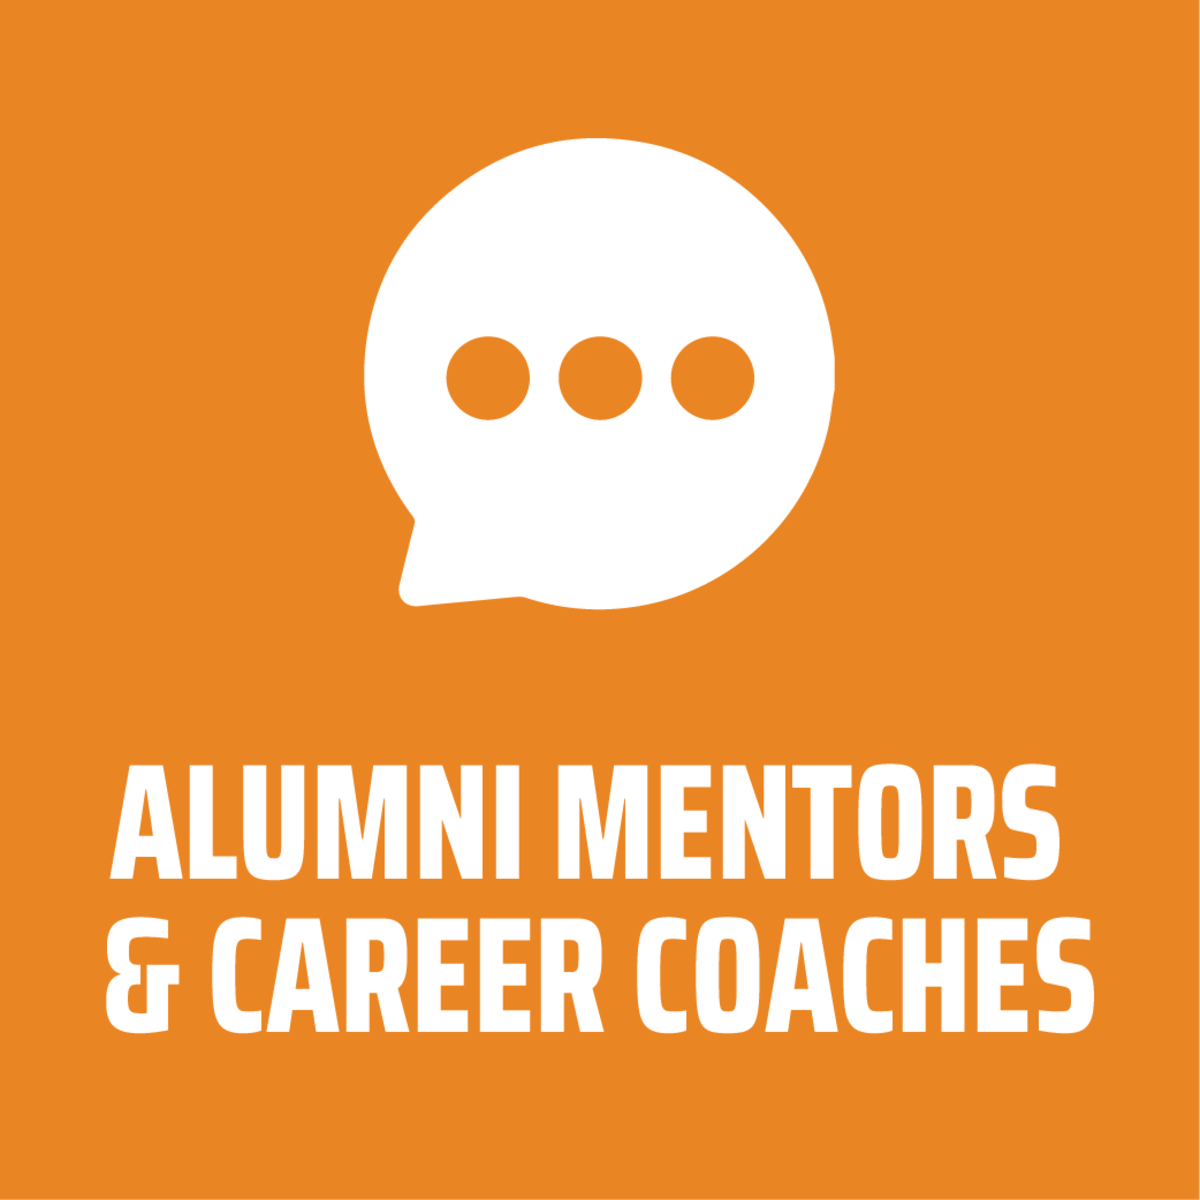 Alumni mentors and career coaches